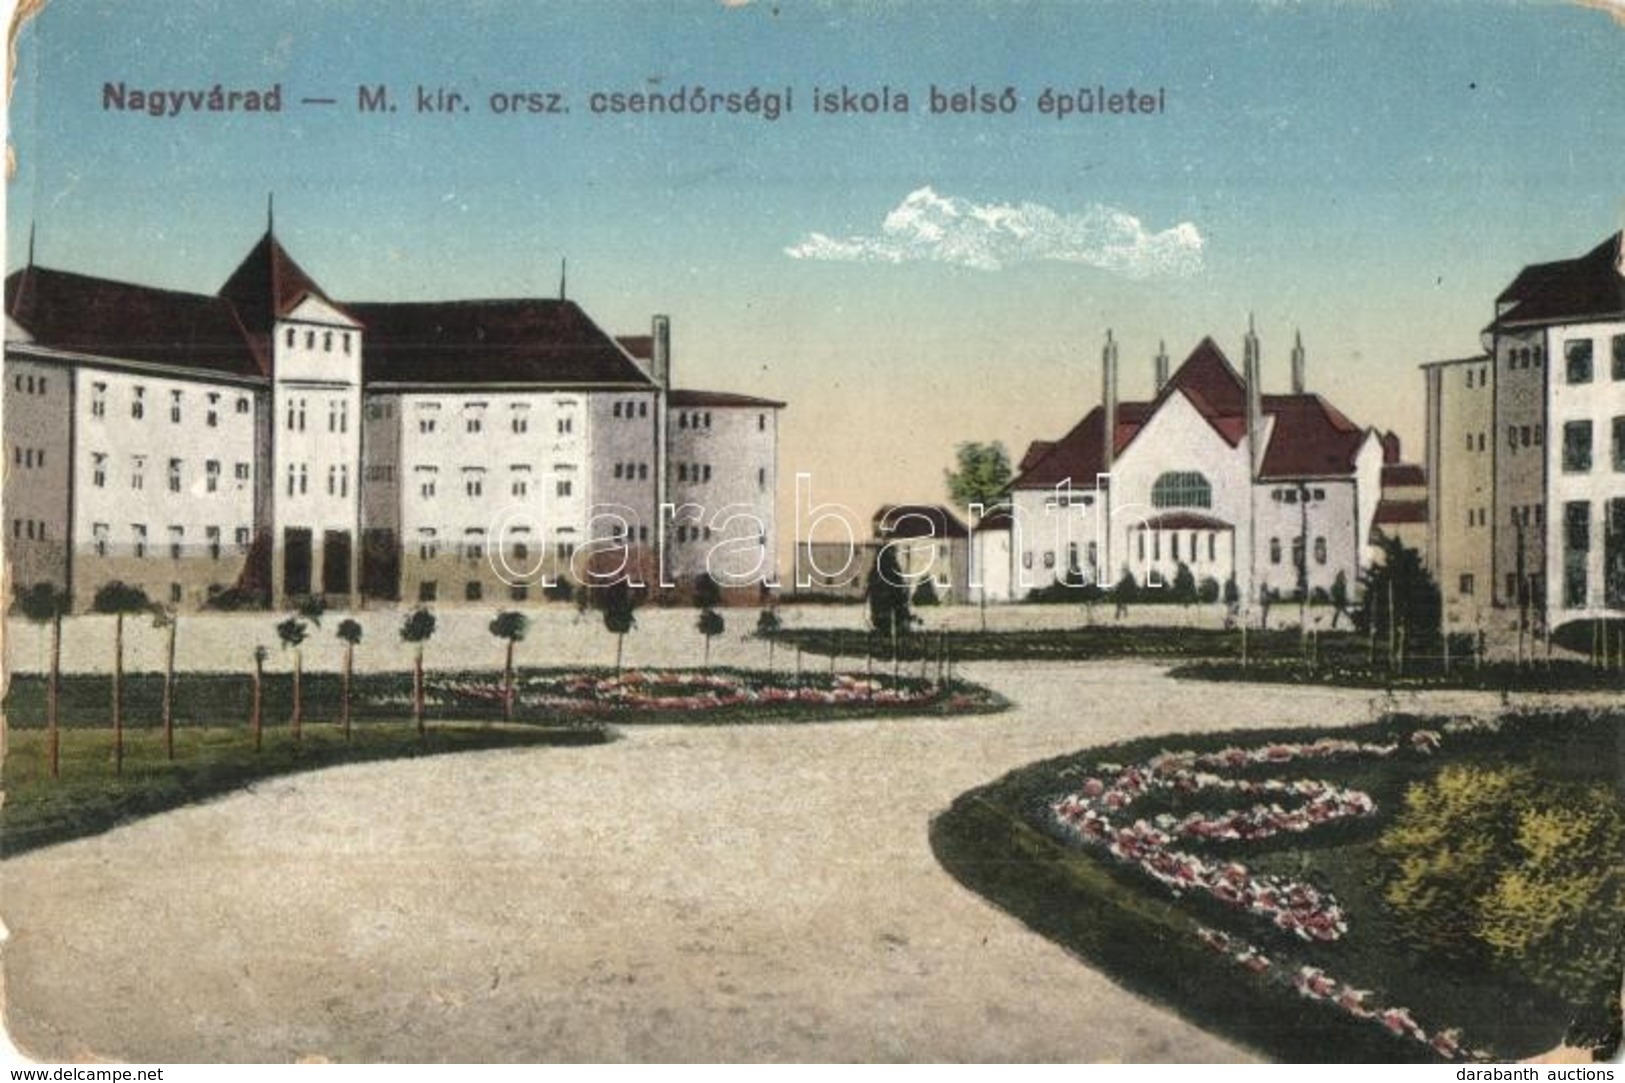 T3 Nagyvárad, Oradea; M. Kir. Orsz. Csendőrségi Iskola Belső épületei / Gendarmerie School Buildings (EB) - Unclassified